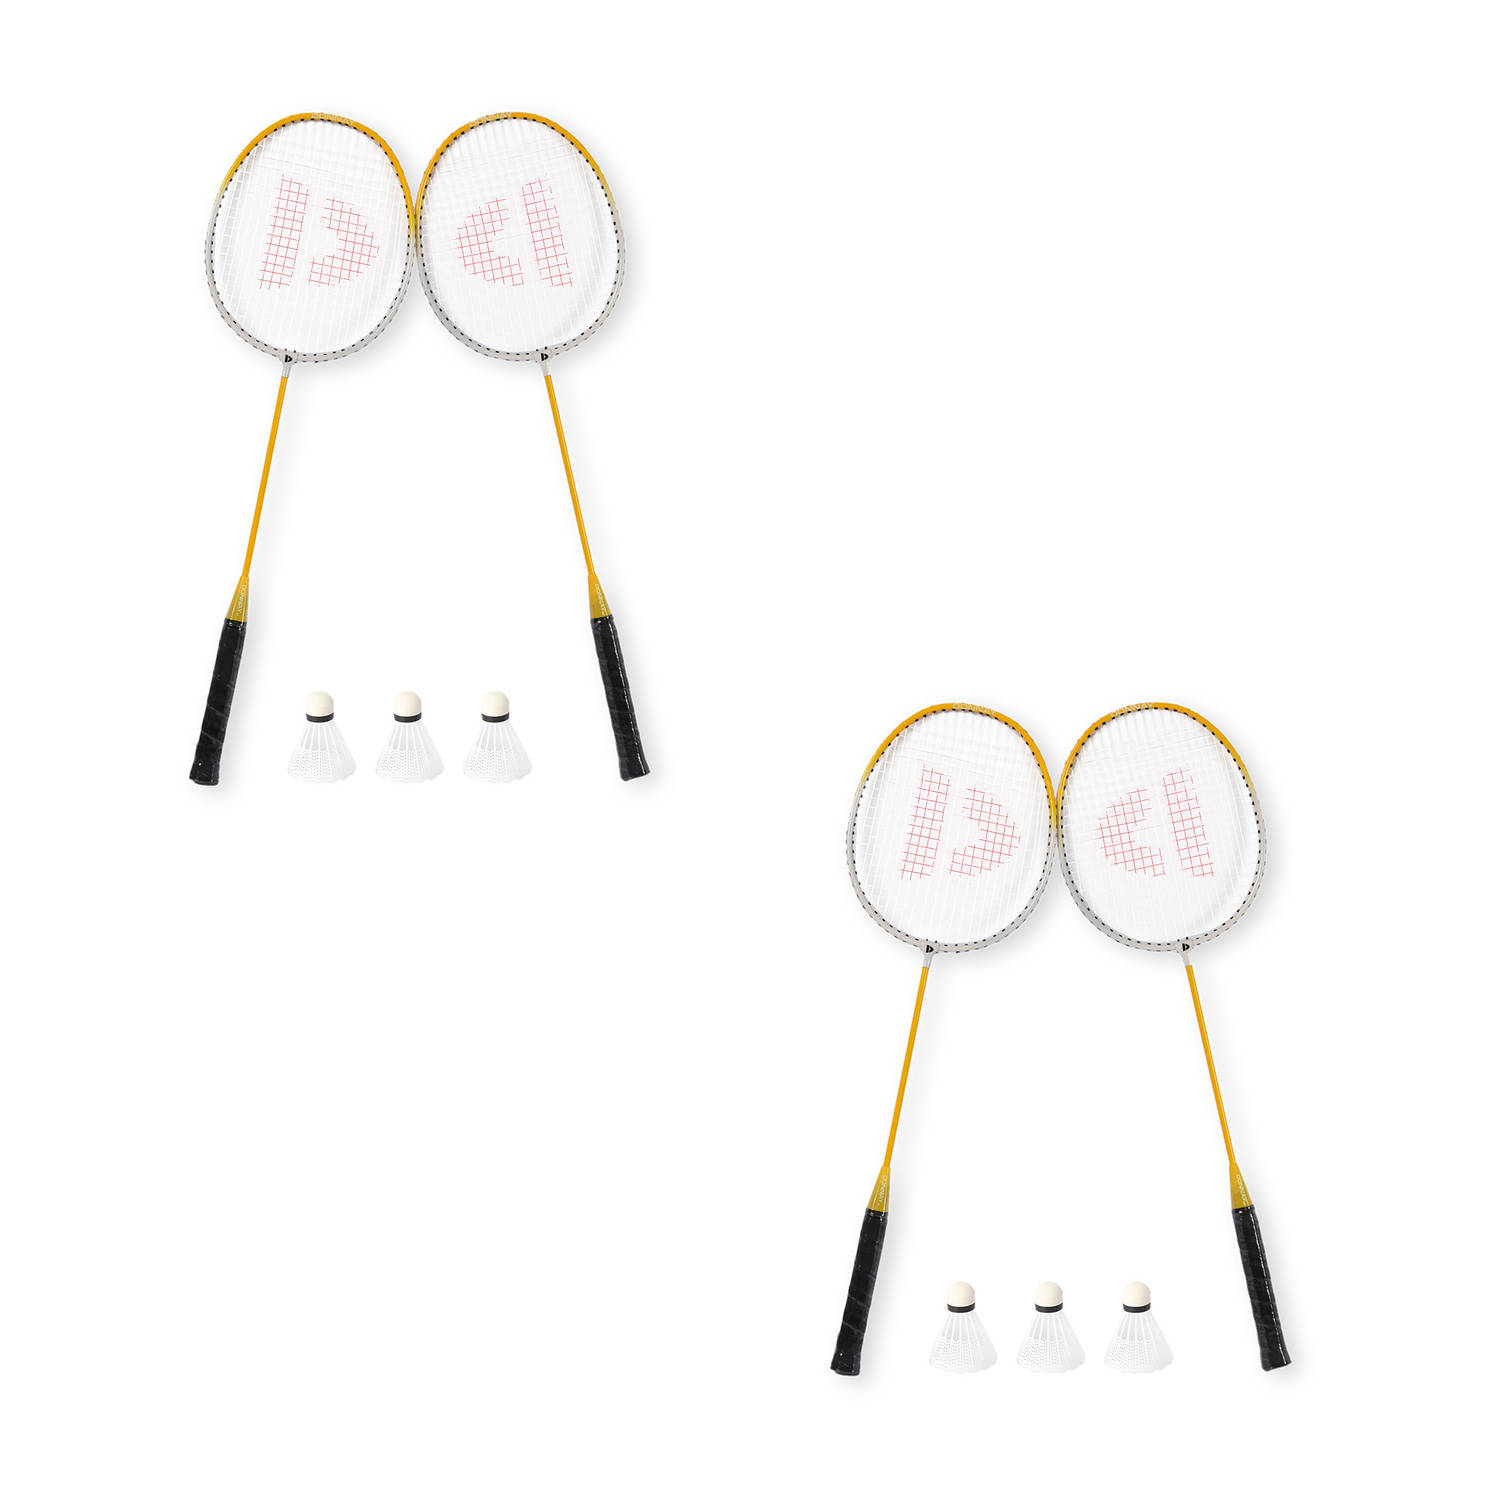 Complete Badmintonset voor Recreatieve Spelers - Inclusief Draagtas – 4x Aluminium Rackets – 6x Bio Plastic Shuttles - Geel